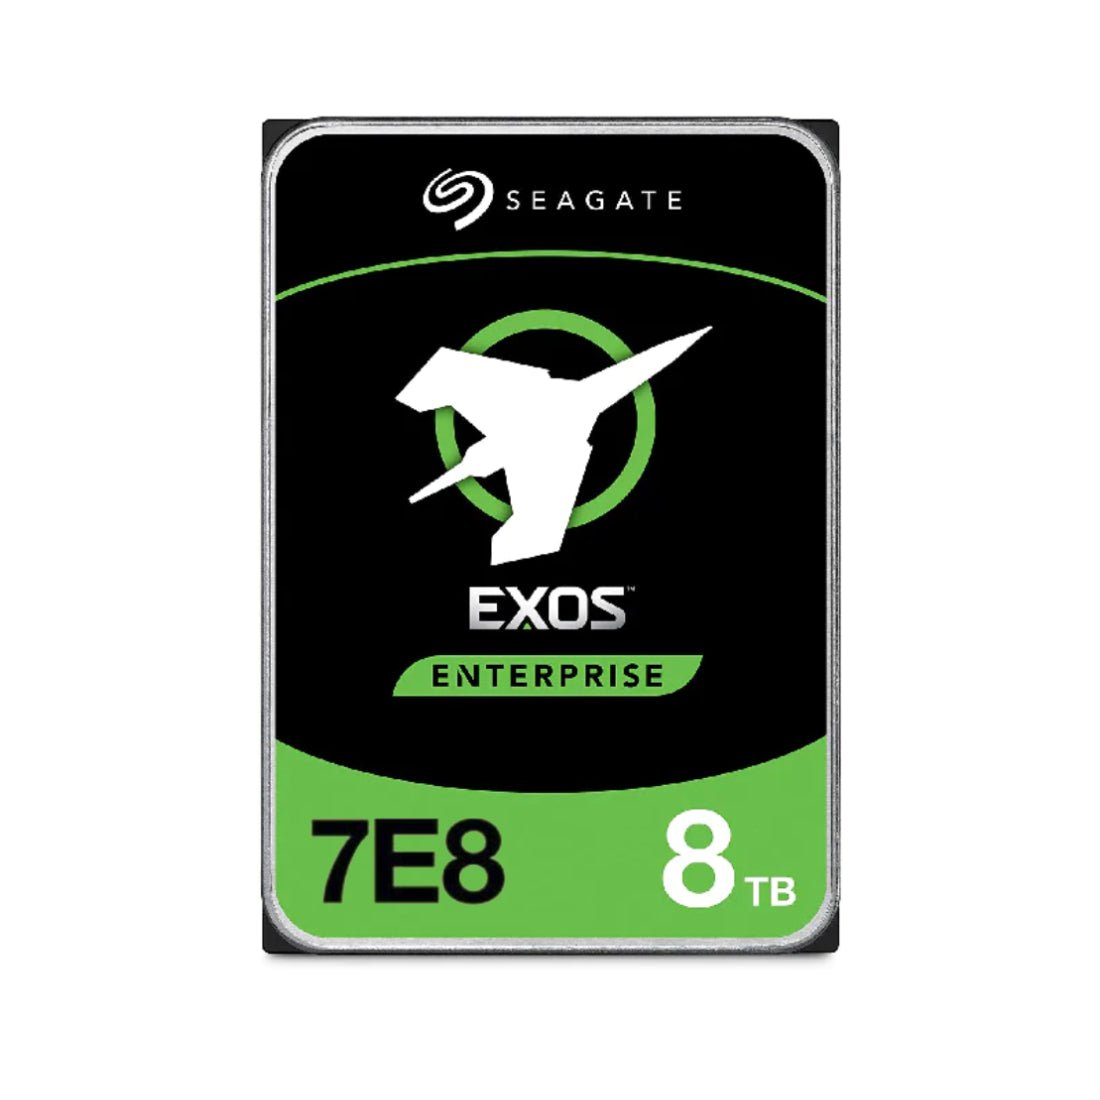 Seagate Exos 7E8 8TB 3.5